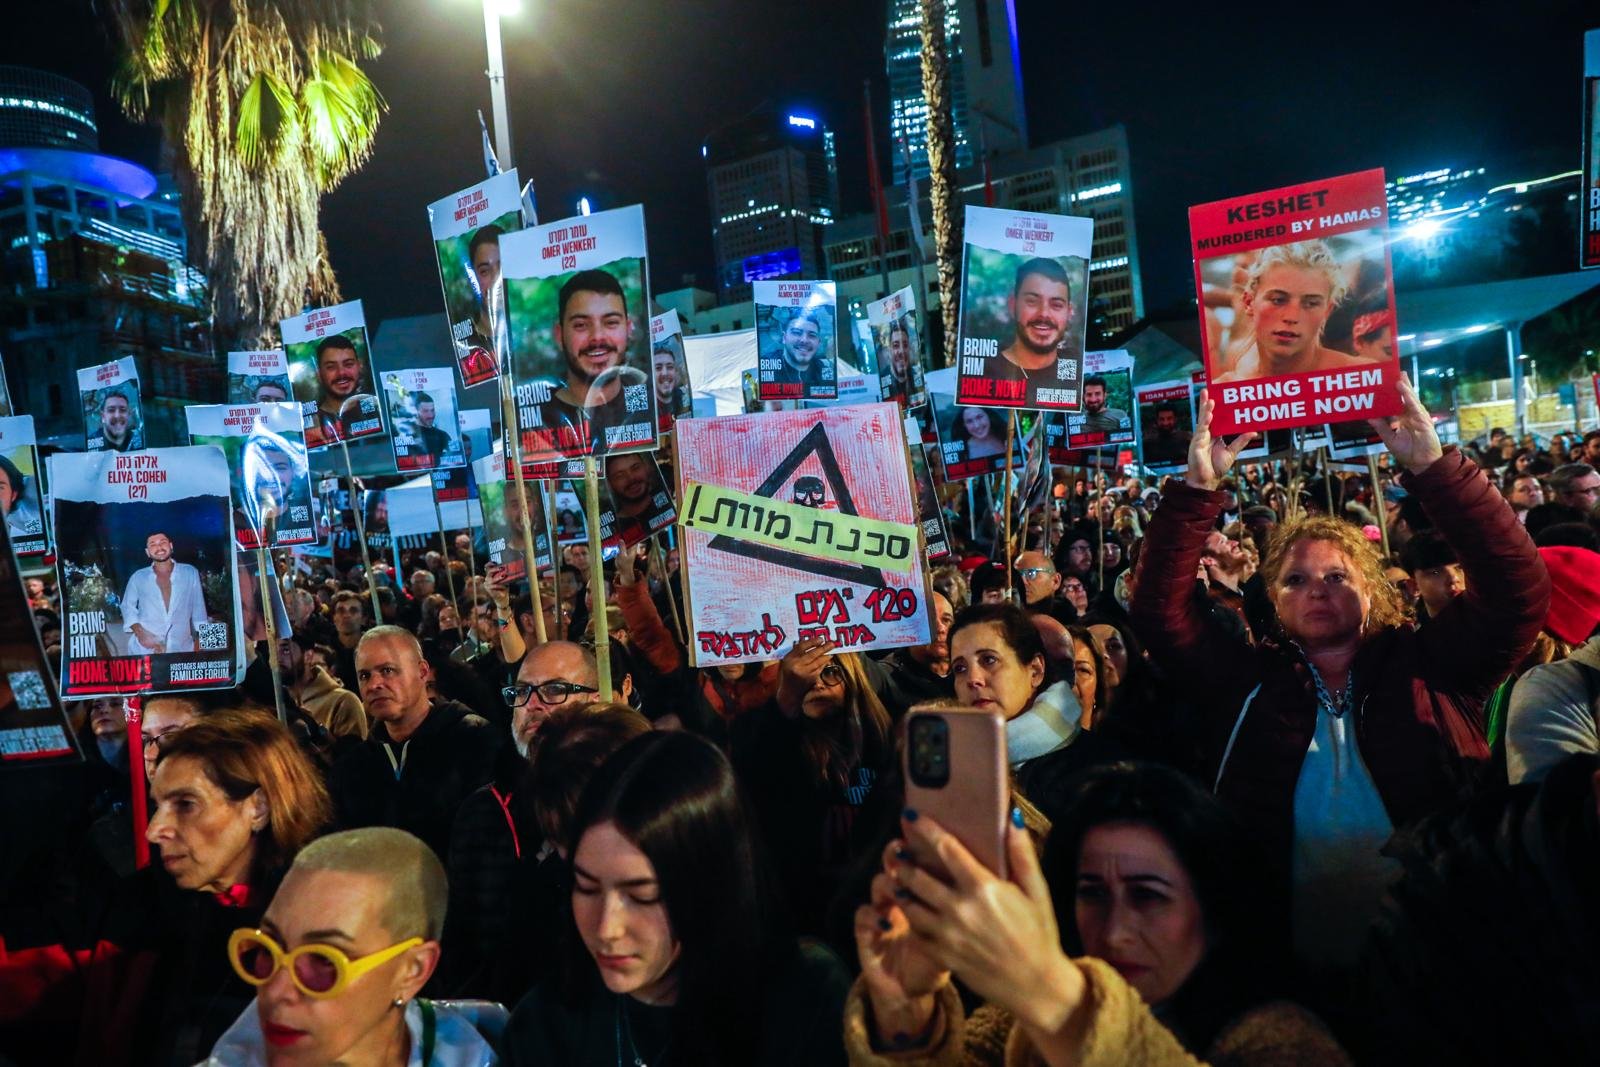 انتخابات قريبة؟! قادة الإحتجاج يمهلون نتنياهو فترة شهور-1